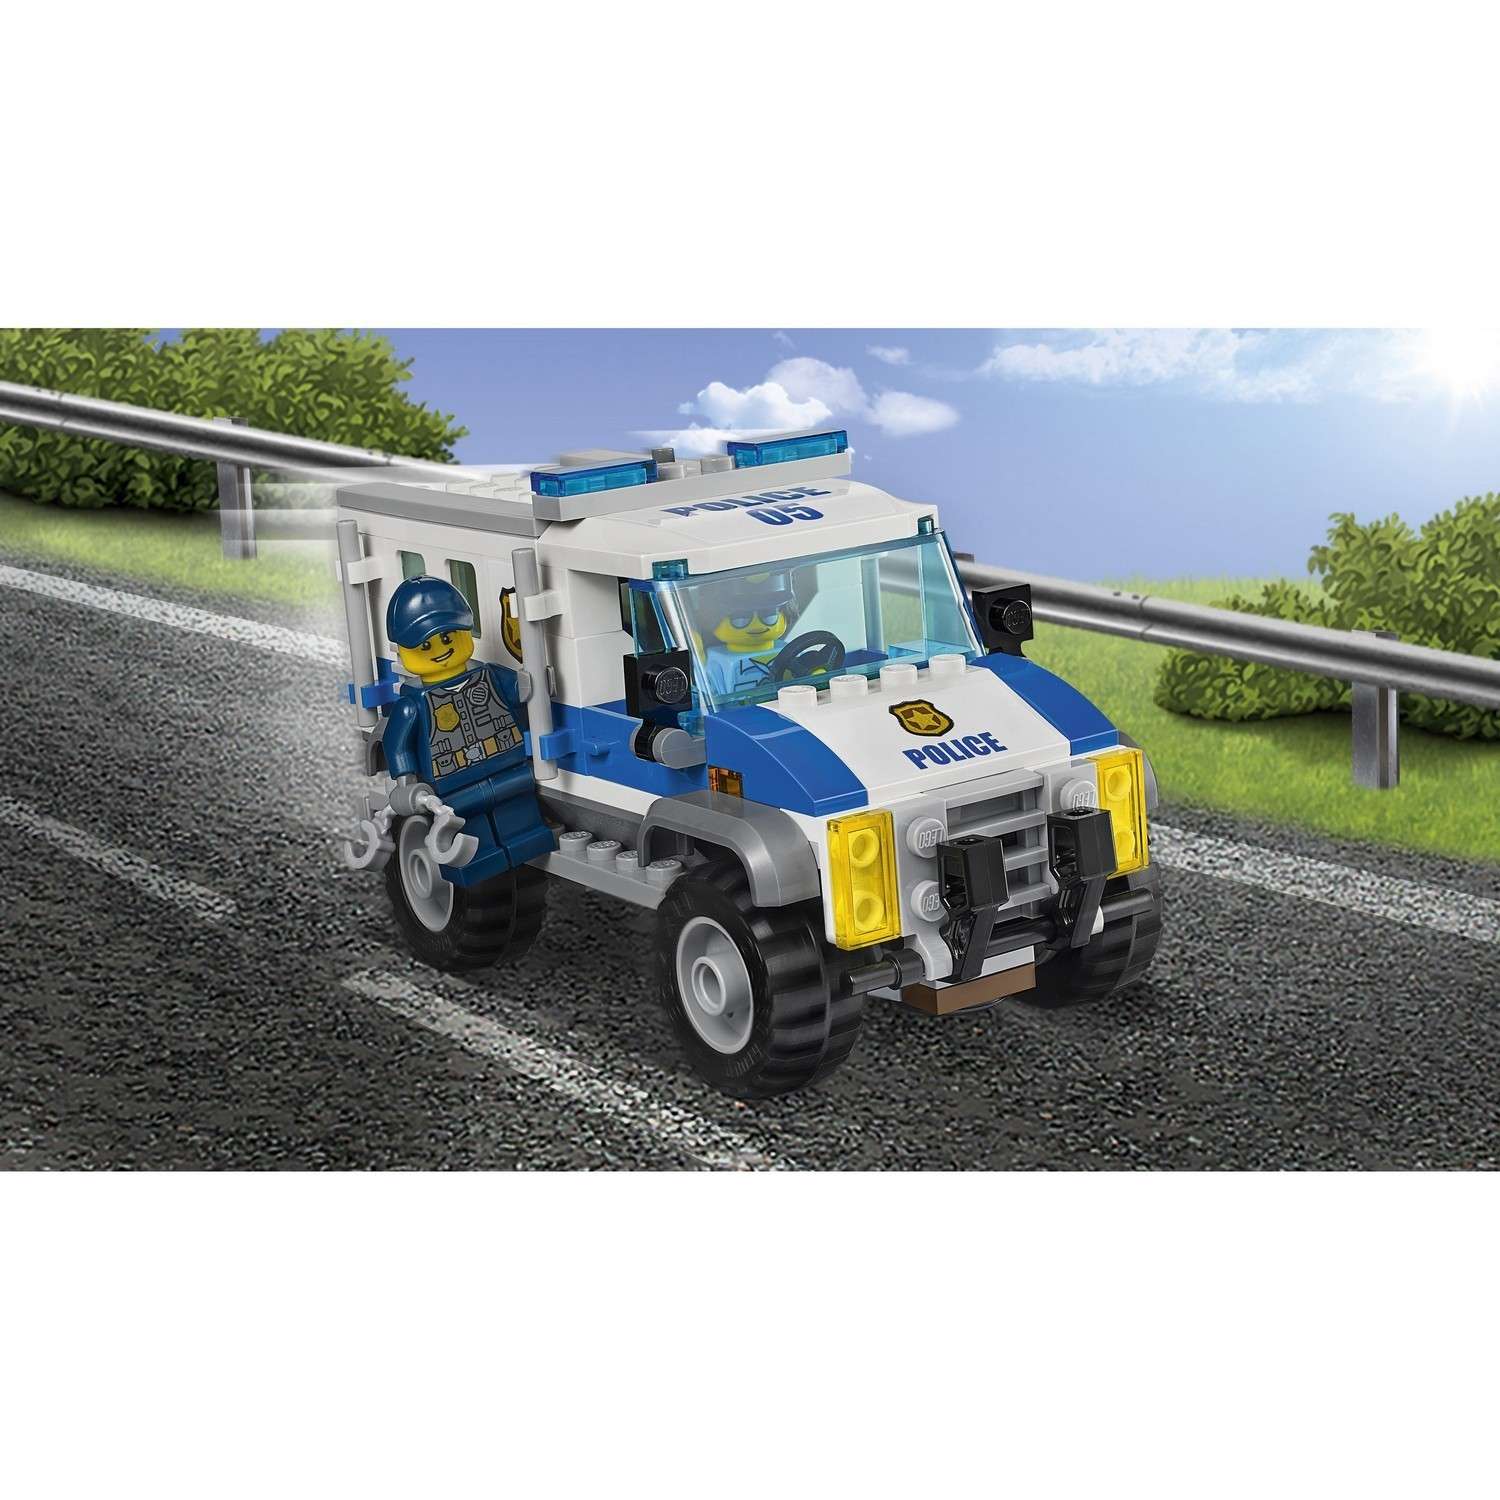 Конструктор LEGO City Police Ограбление на бульдозере (60140) - фото 8